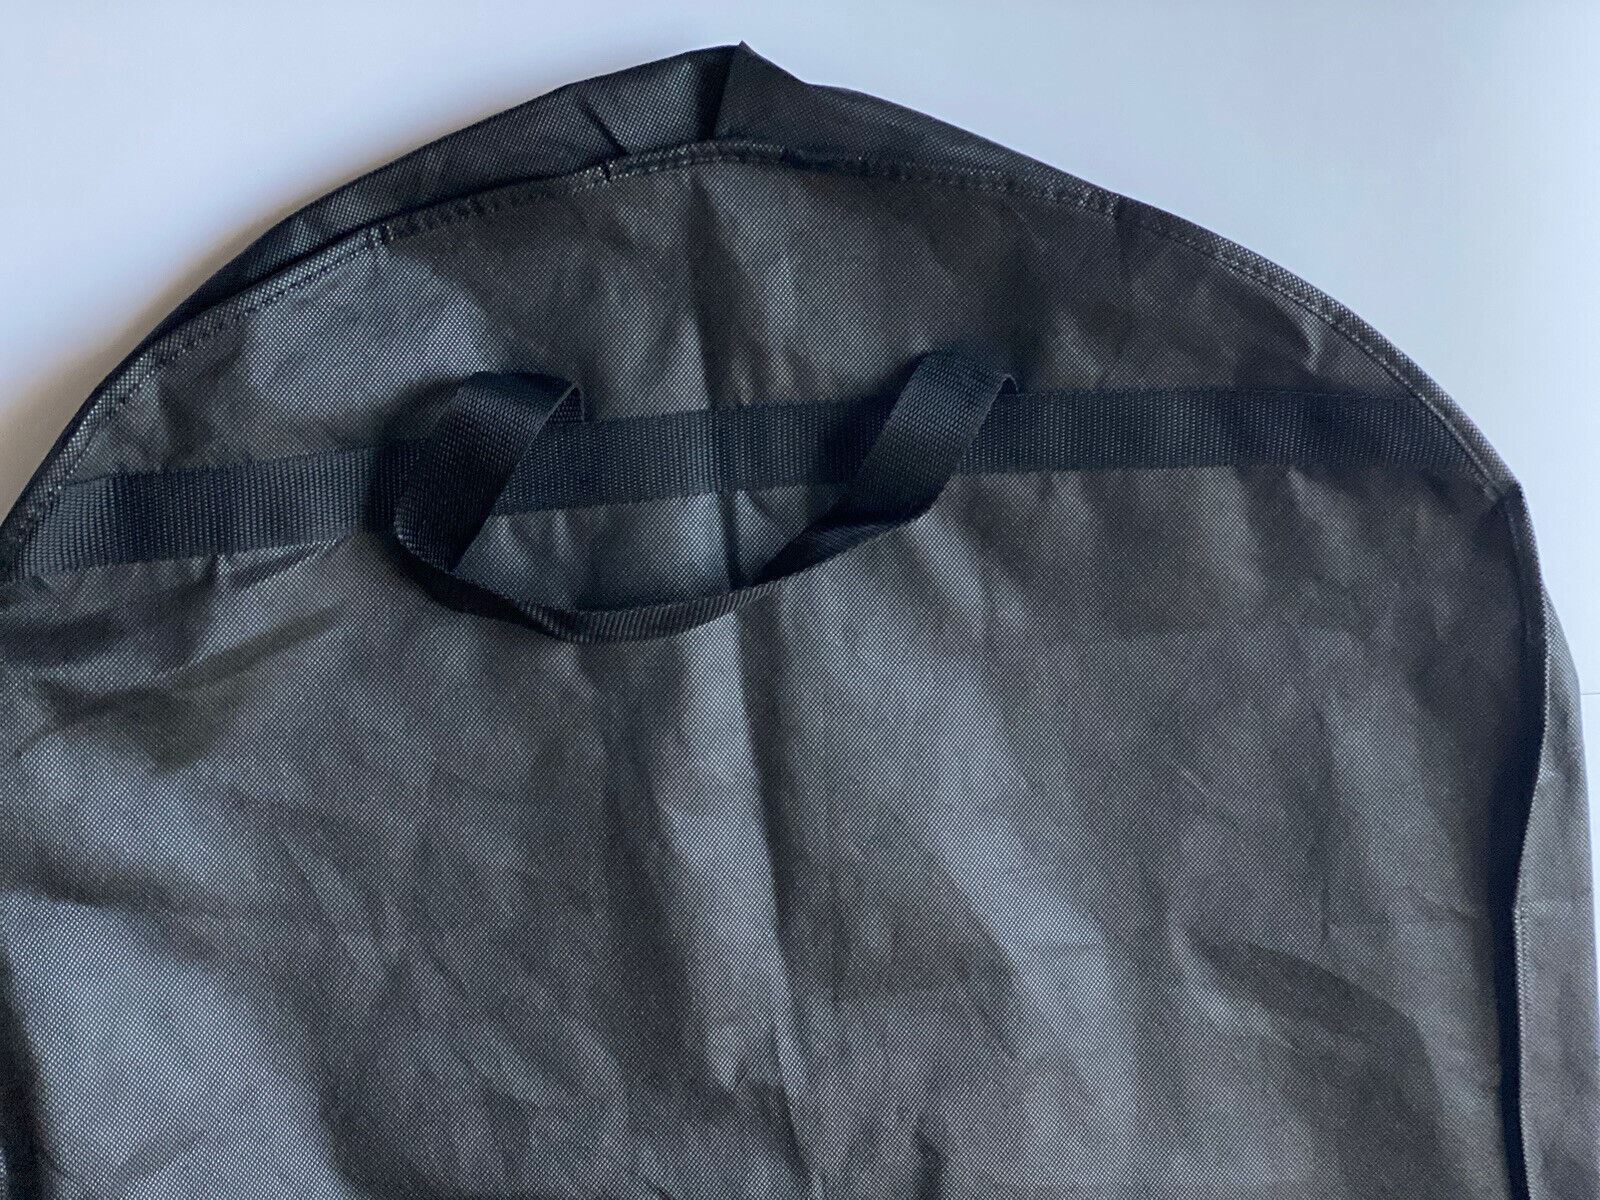 Совершенно новая складная сумка для одежды Versace, черная куртка/жилет, 43 дюйма x 23,5 дюйма 1002751 